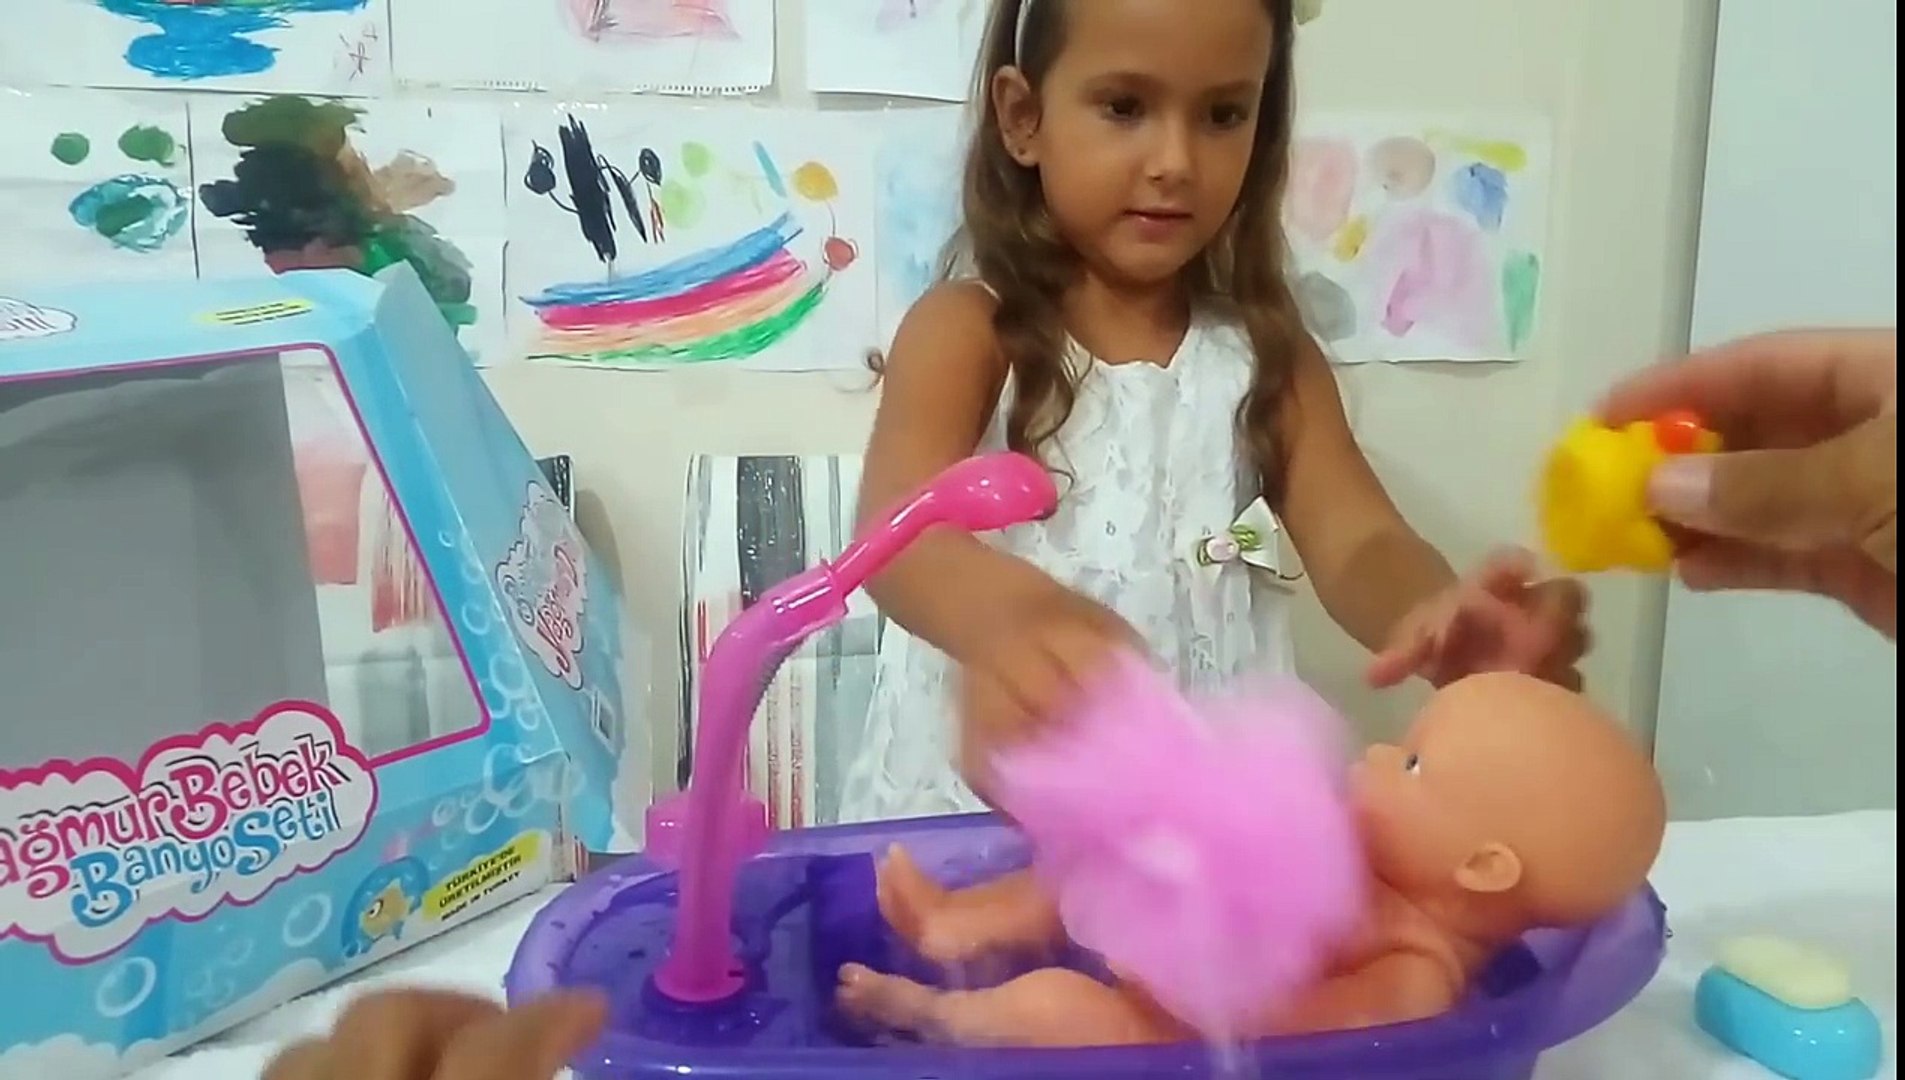 yağmur bebek banyo seti oyuncak kutu açımı,baby doll banyo yaptırma oyunu,  eğlenceli çocuk videosu - Dailymotion Video